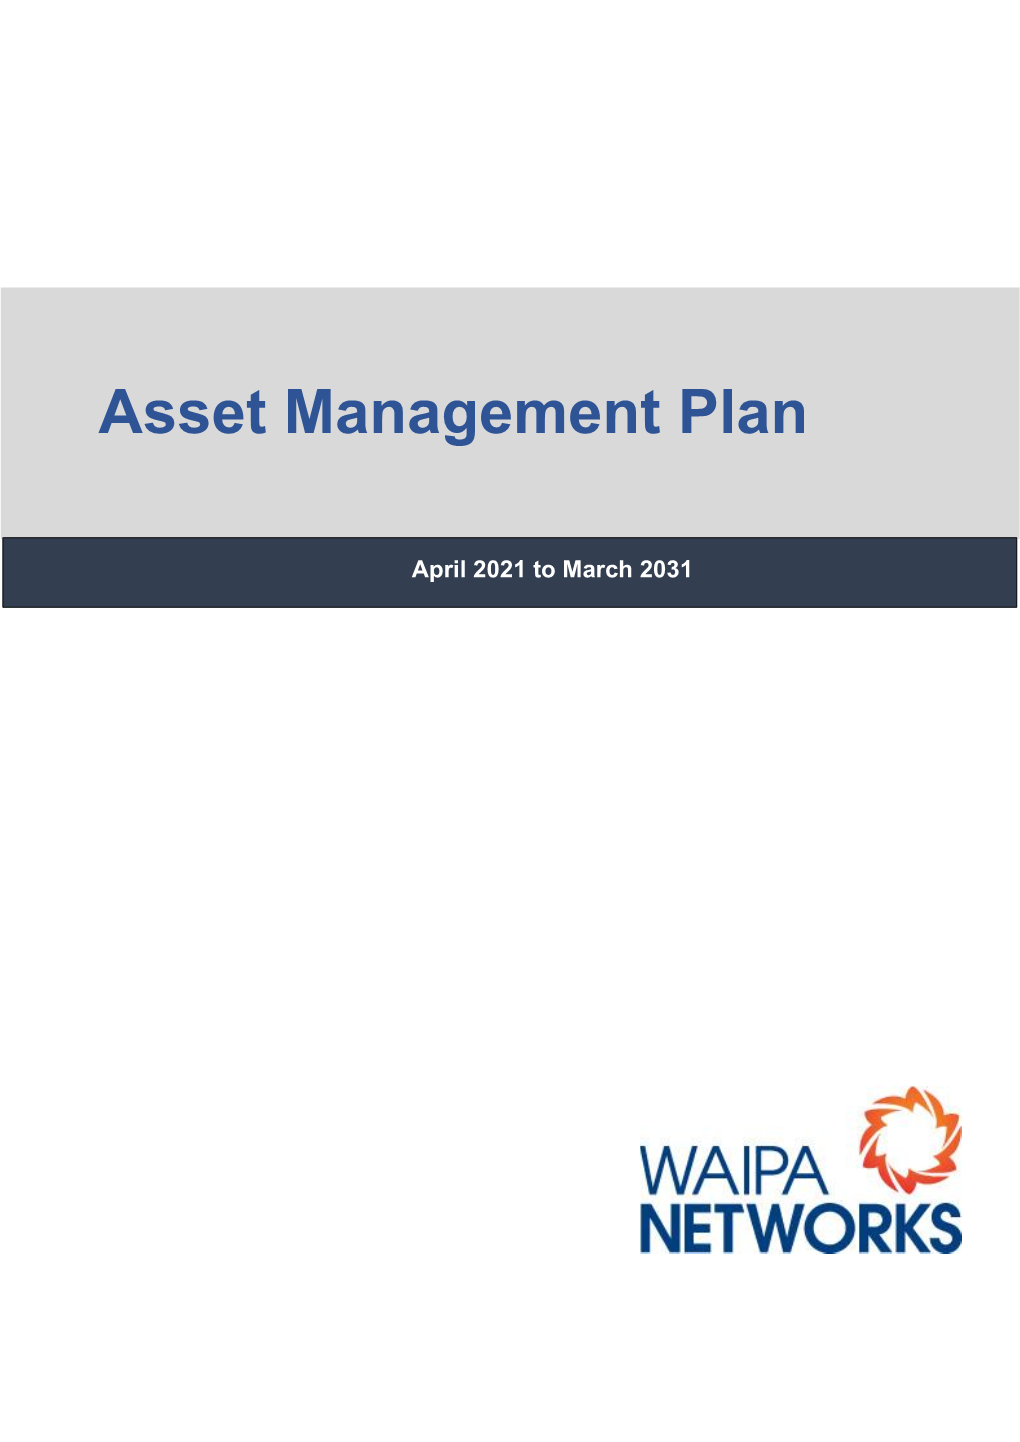 Asset Management Plan 2021-2031